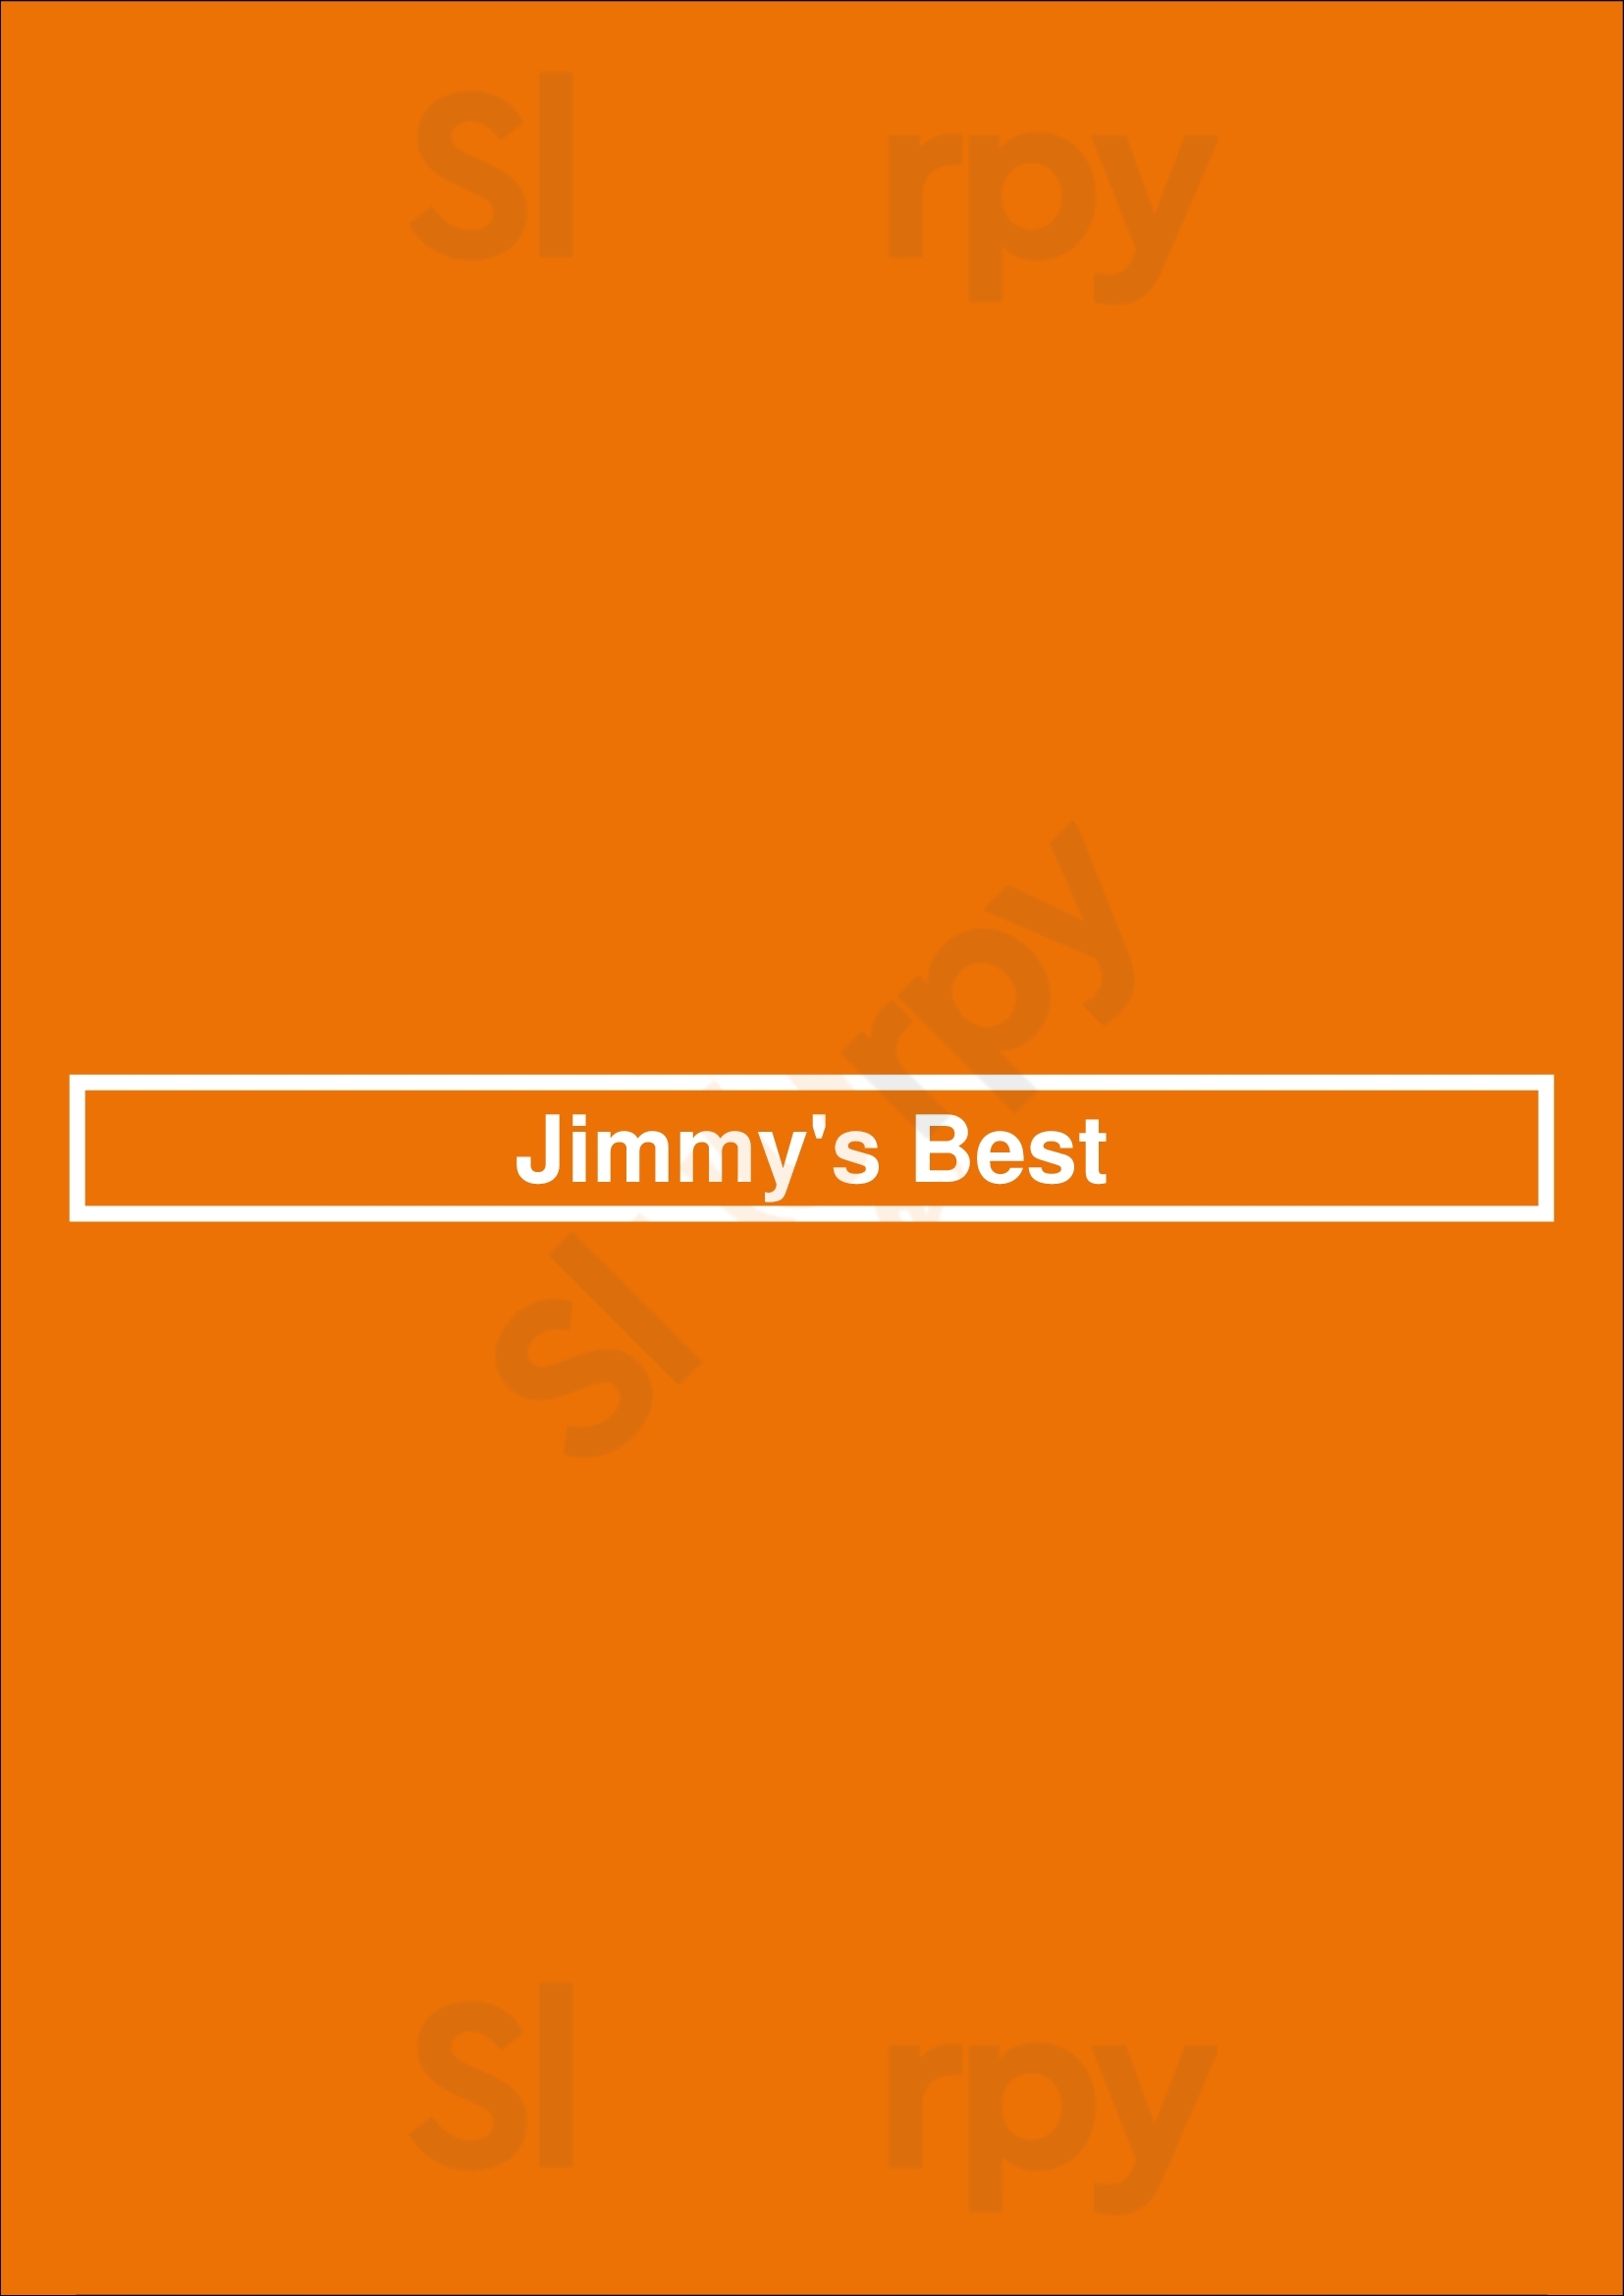 Jimmy's Best Chicago Menu - 1